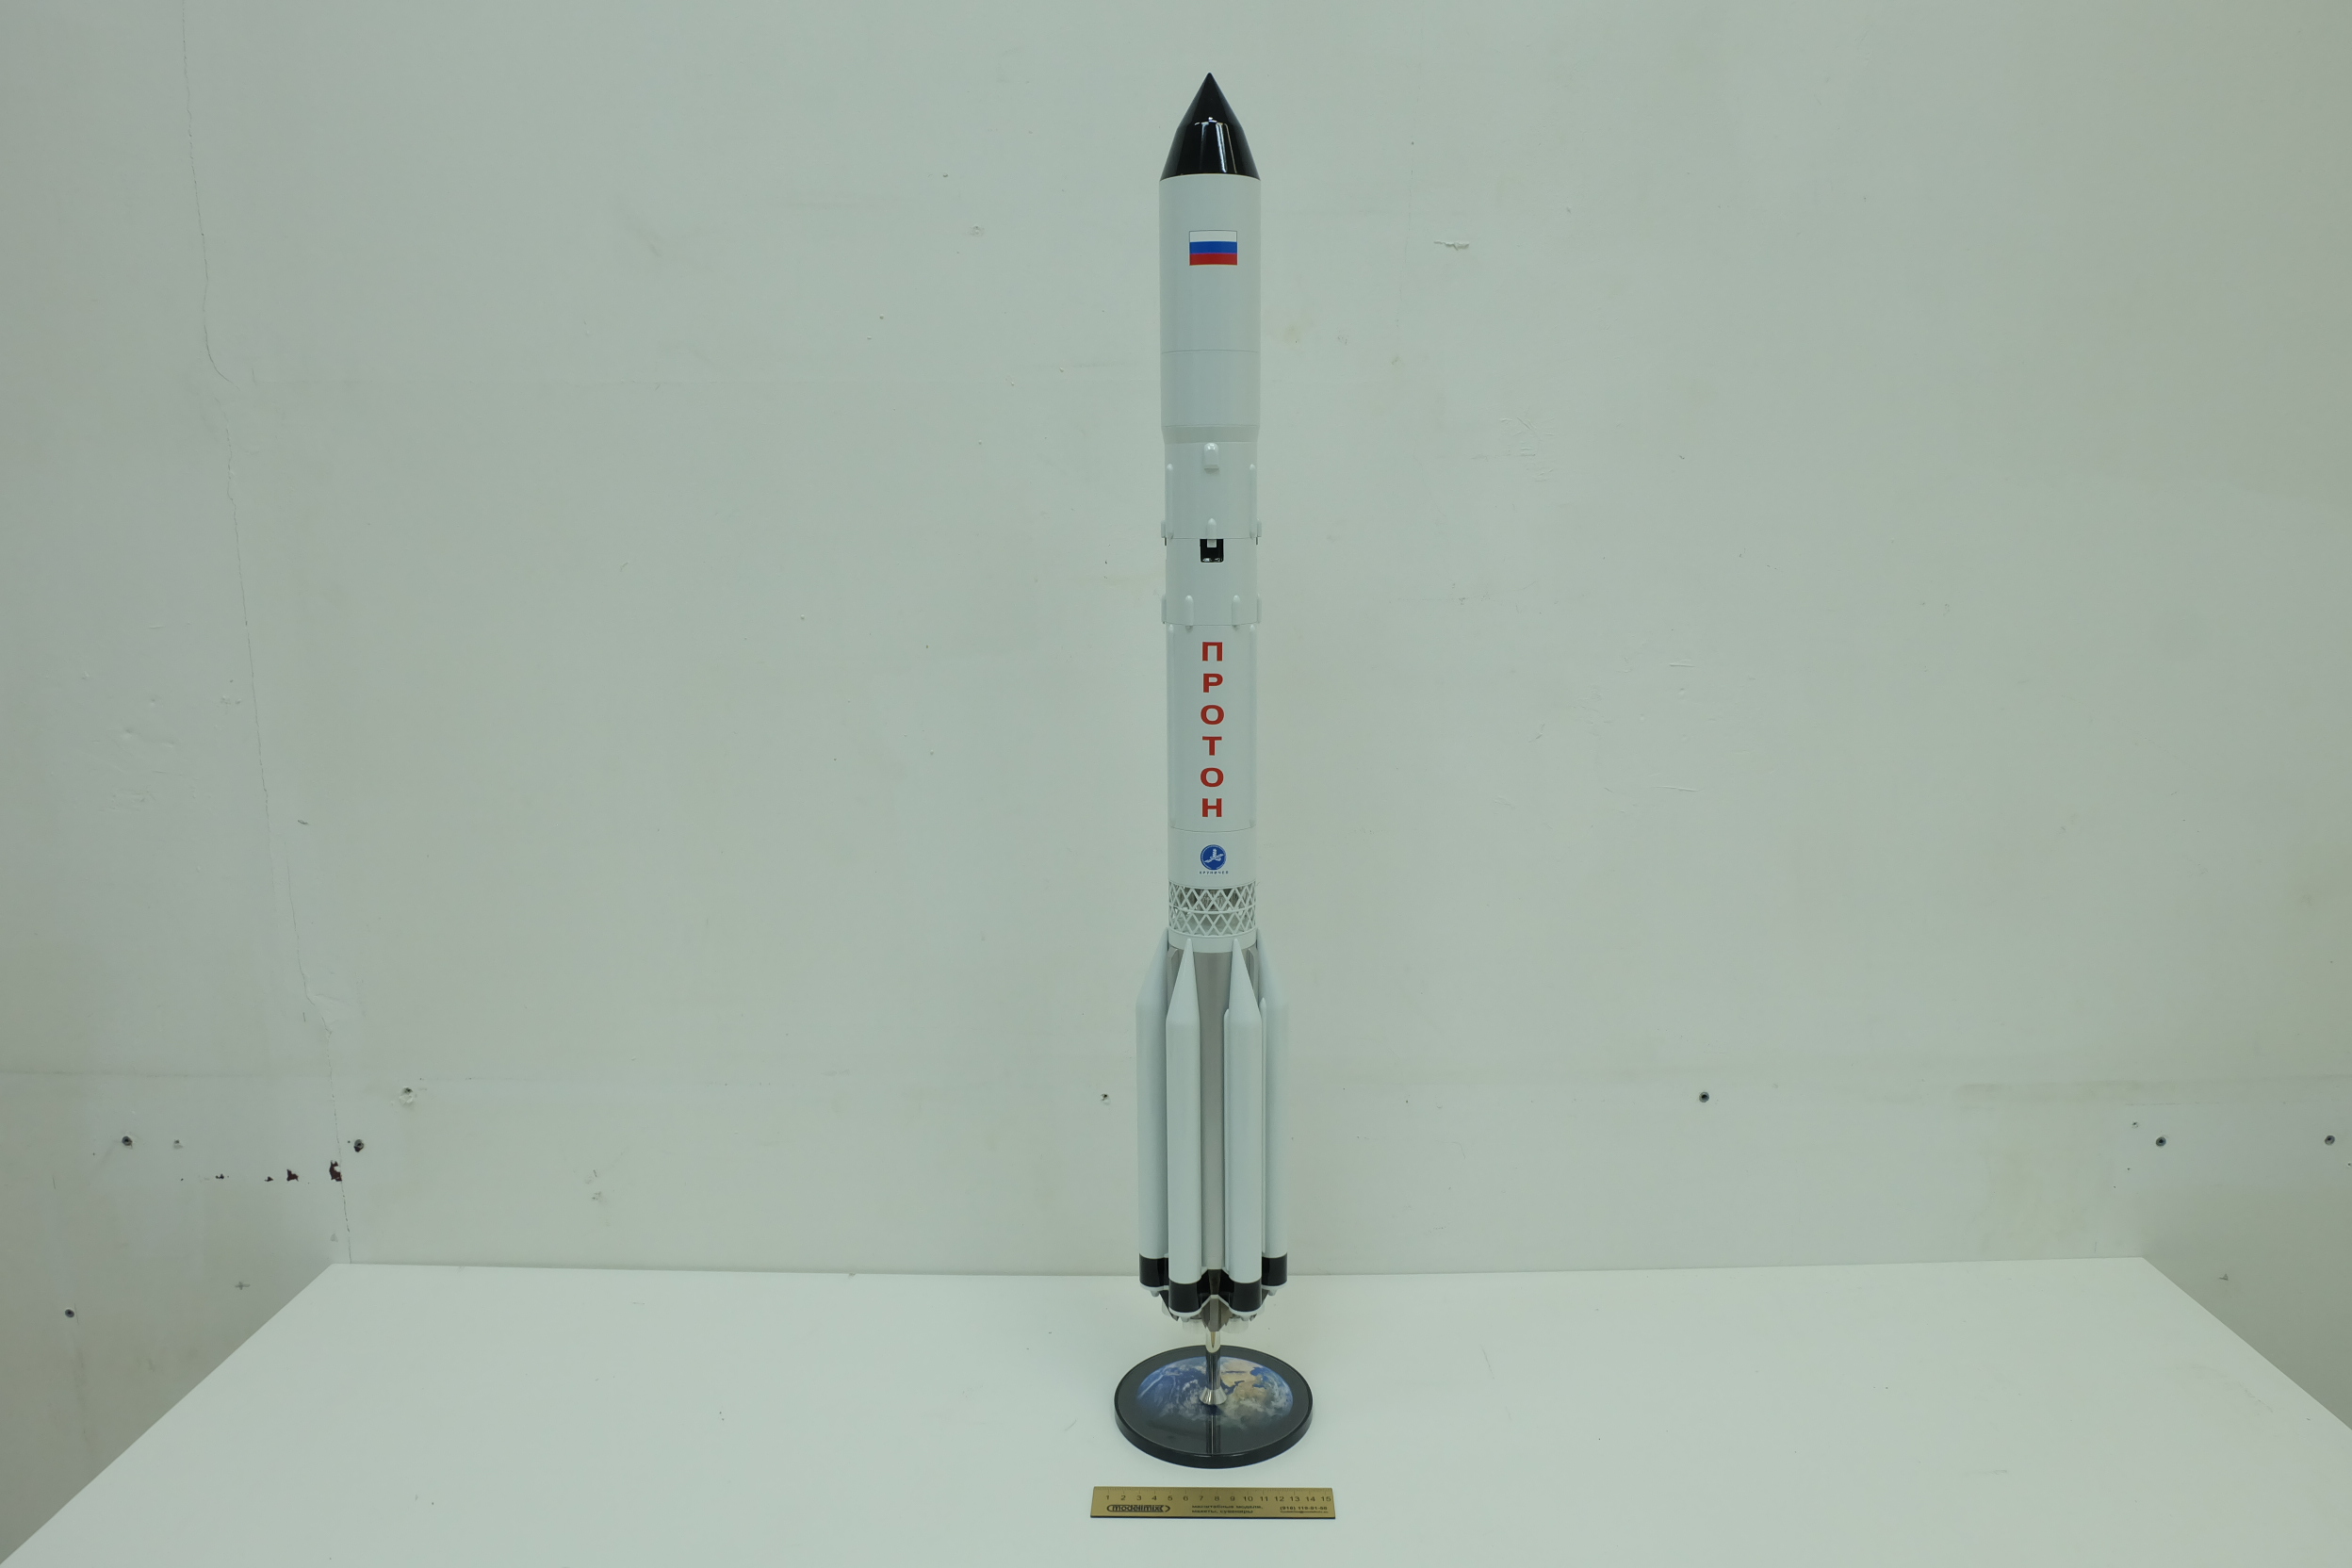 Р37м ракета. Ур-500 Протон. Ракета ур-500. Ракета Протон модель сувенир. ПРС-1м ракета.